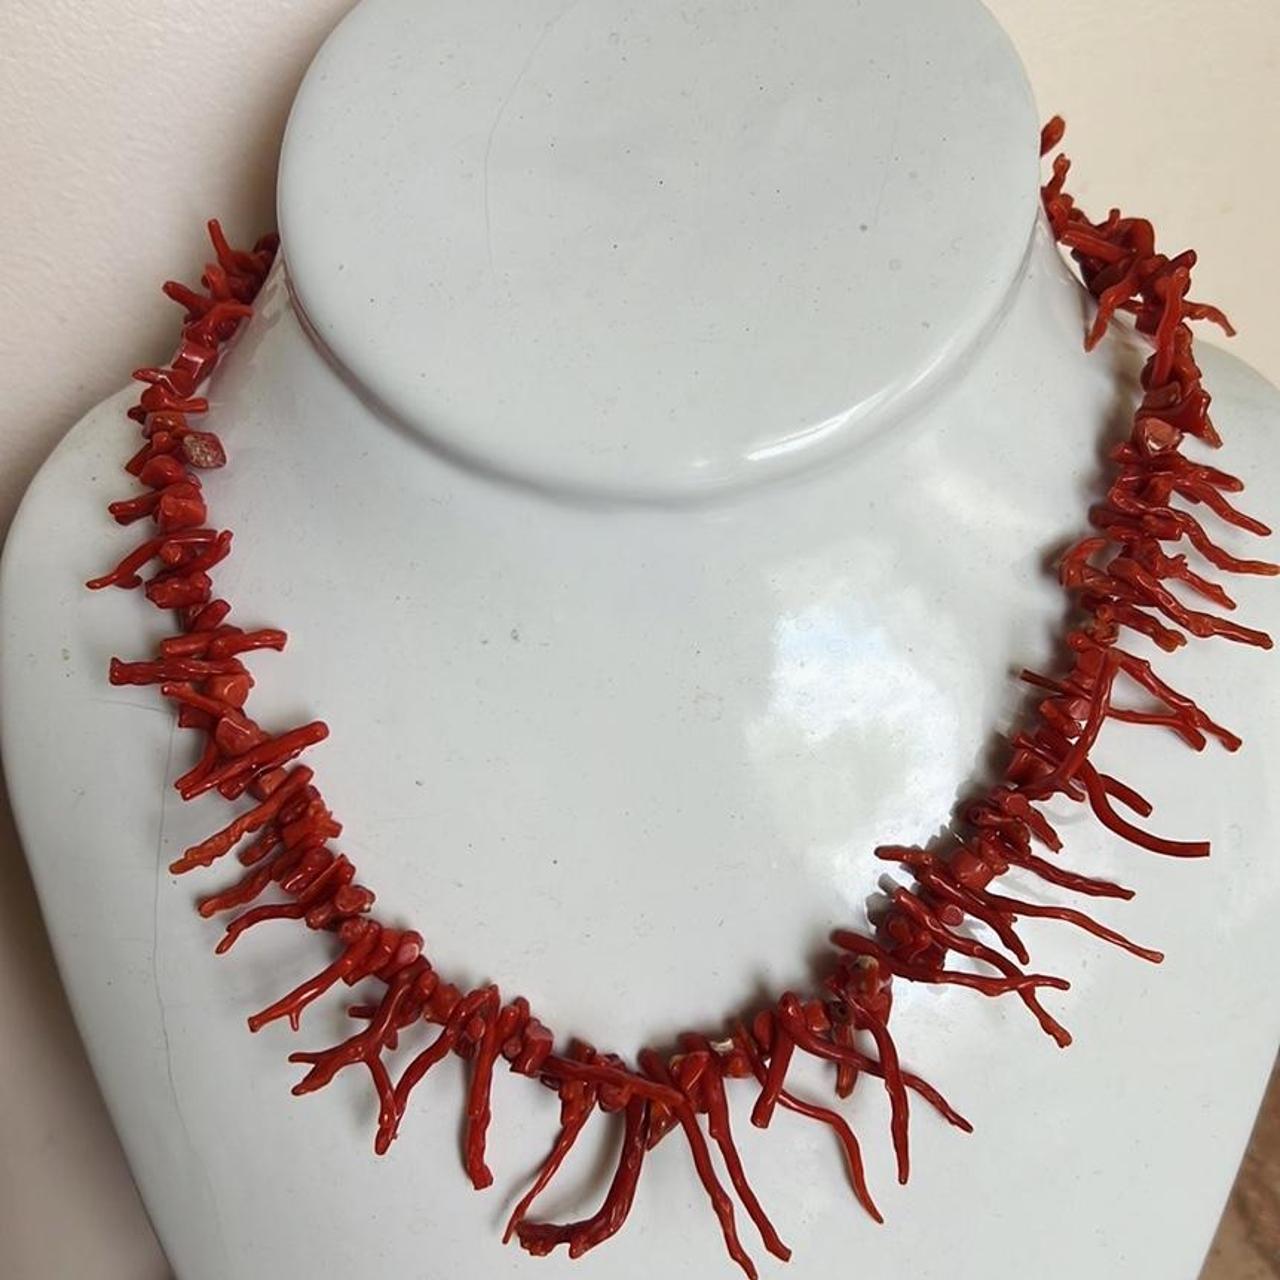 Vintage red coral branch necklace rare ! Super nice - Depop